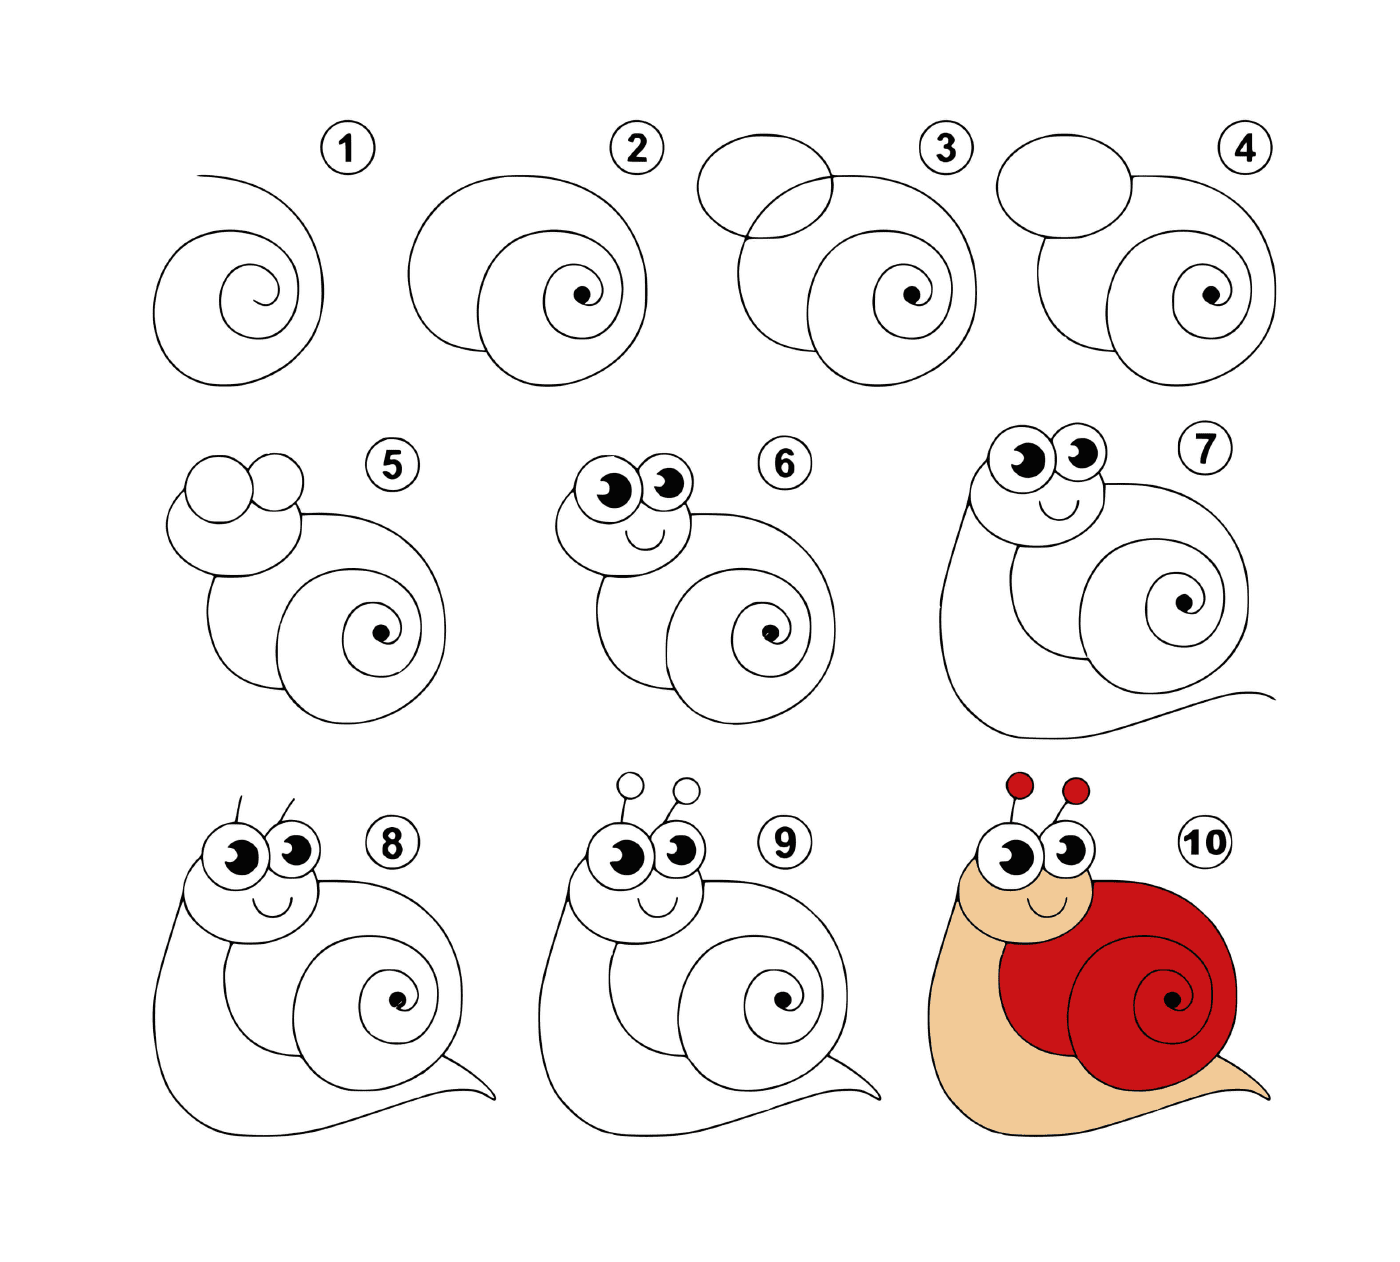  Cómo dibujar un caracol fácilmente 